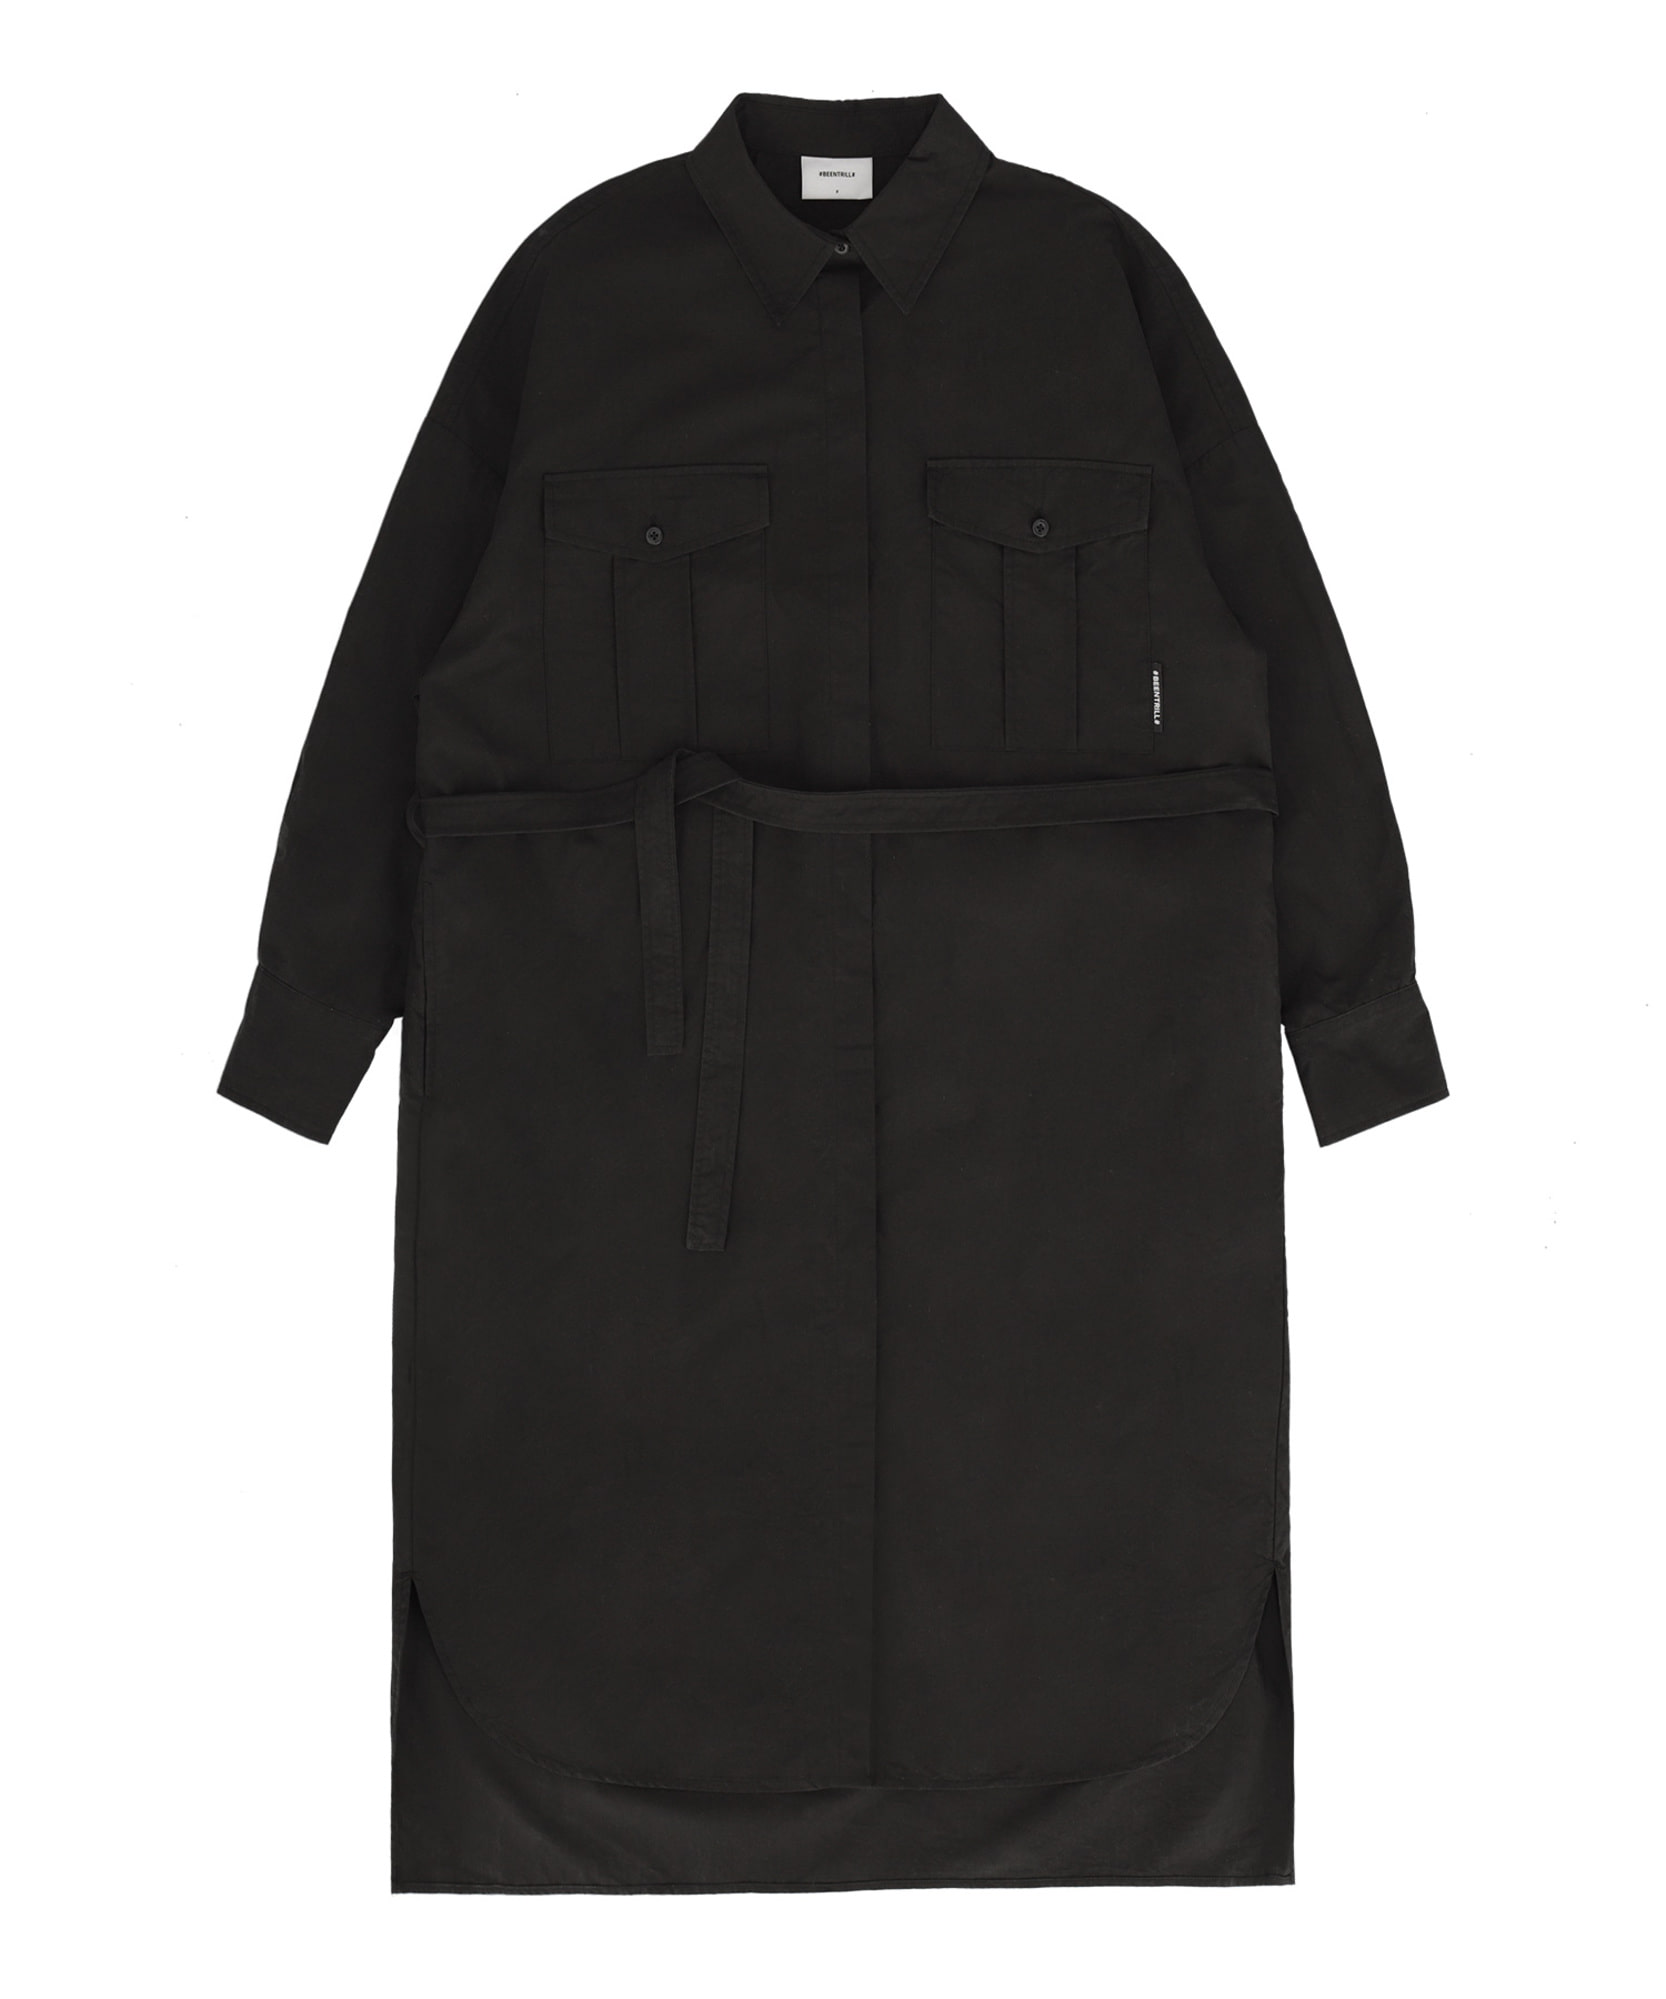 벨티드 오버핏 셔츠 드레스 원피스(블랙)